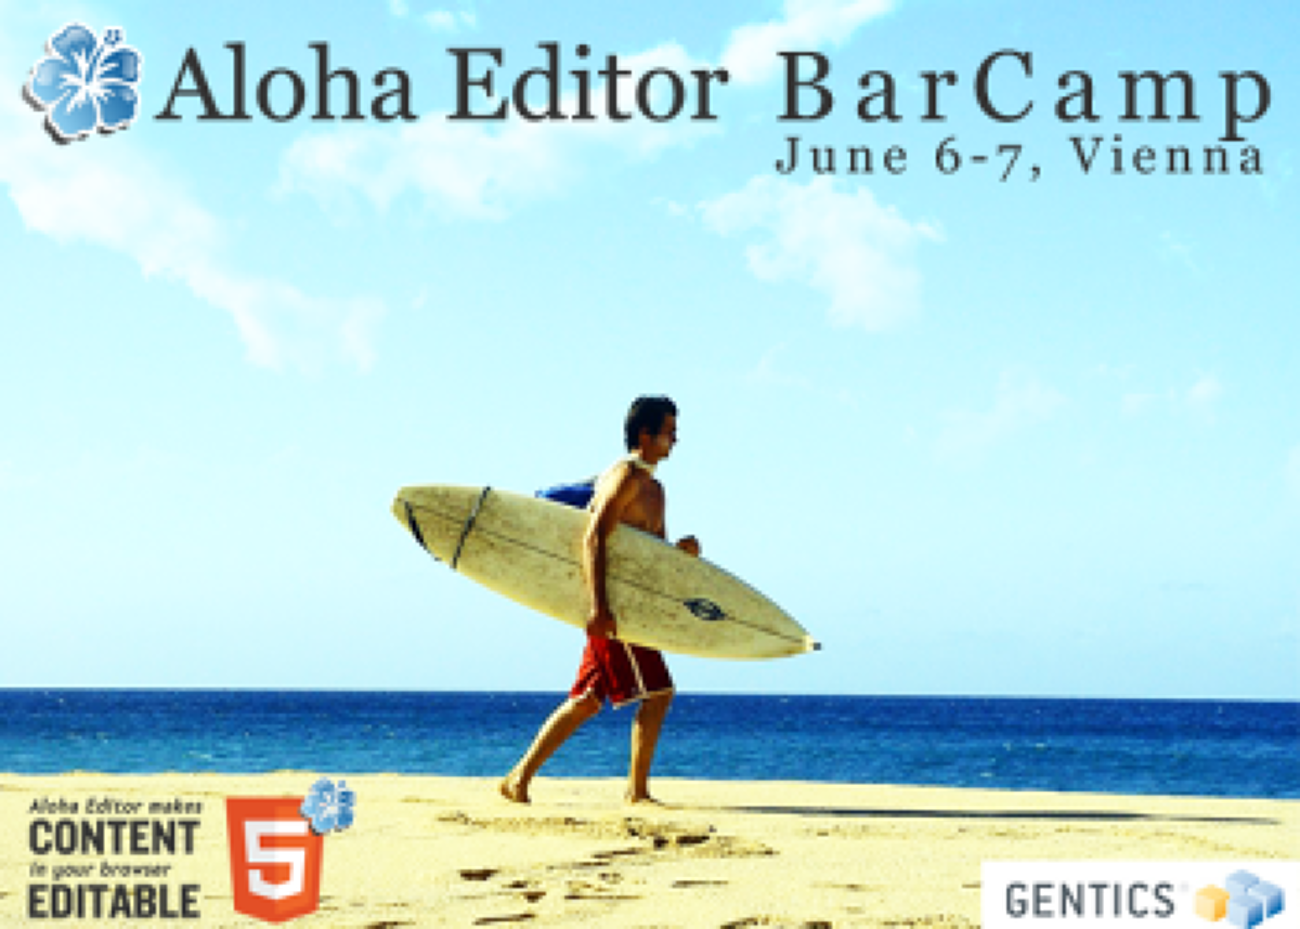 Aloha Editor Barcamp